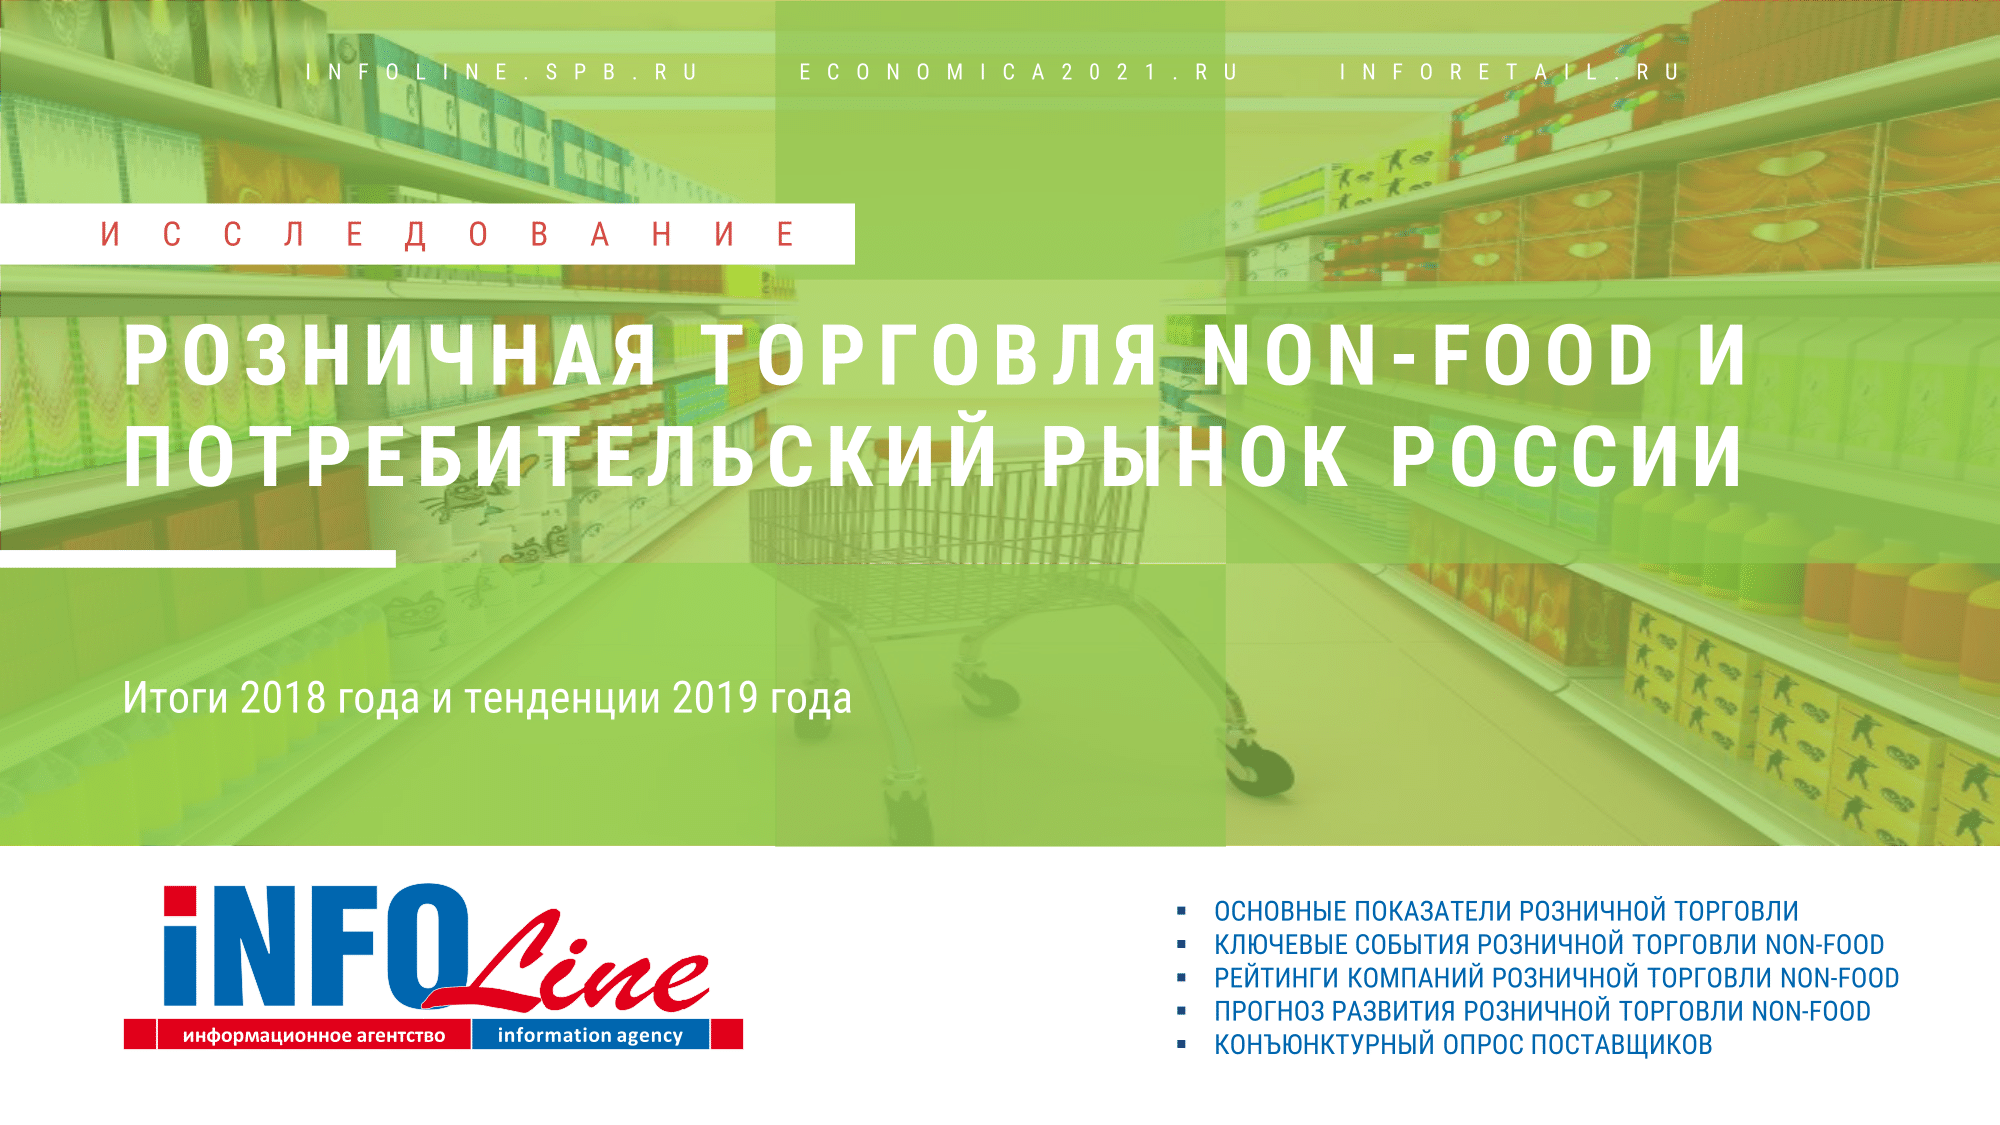 "Розничная торговля Non-Food и потребительский рынок России. Итоги 2018 года и тенденции 2019 года. Перспективы развития до 2021 года" (доступна обновленная версия)